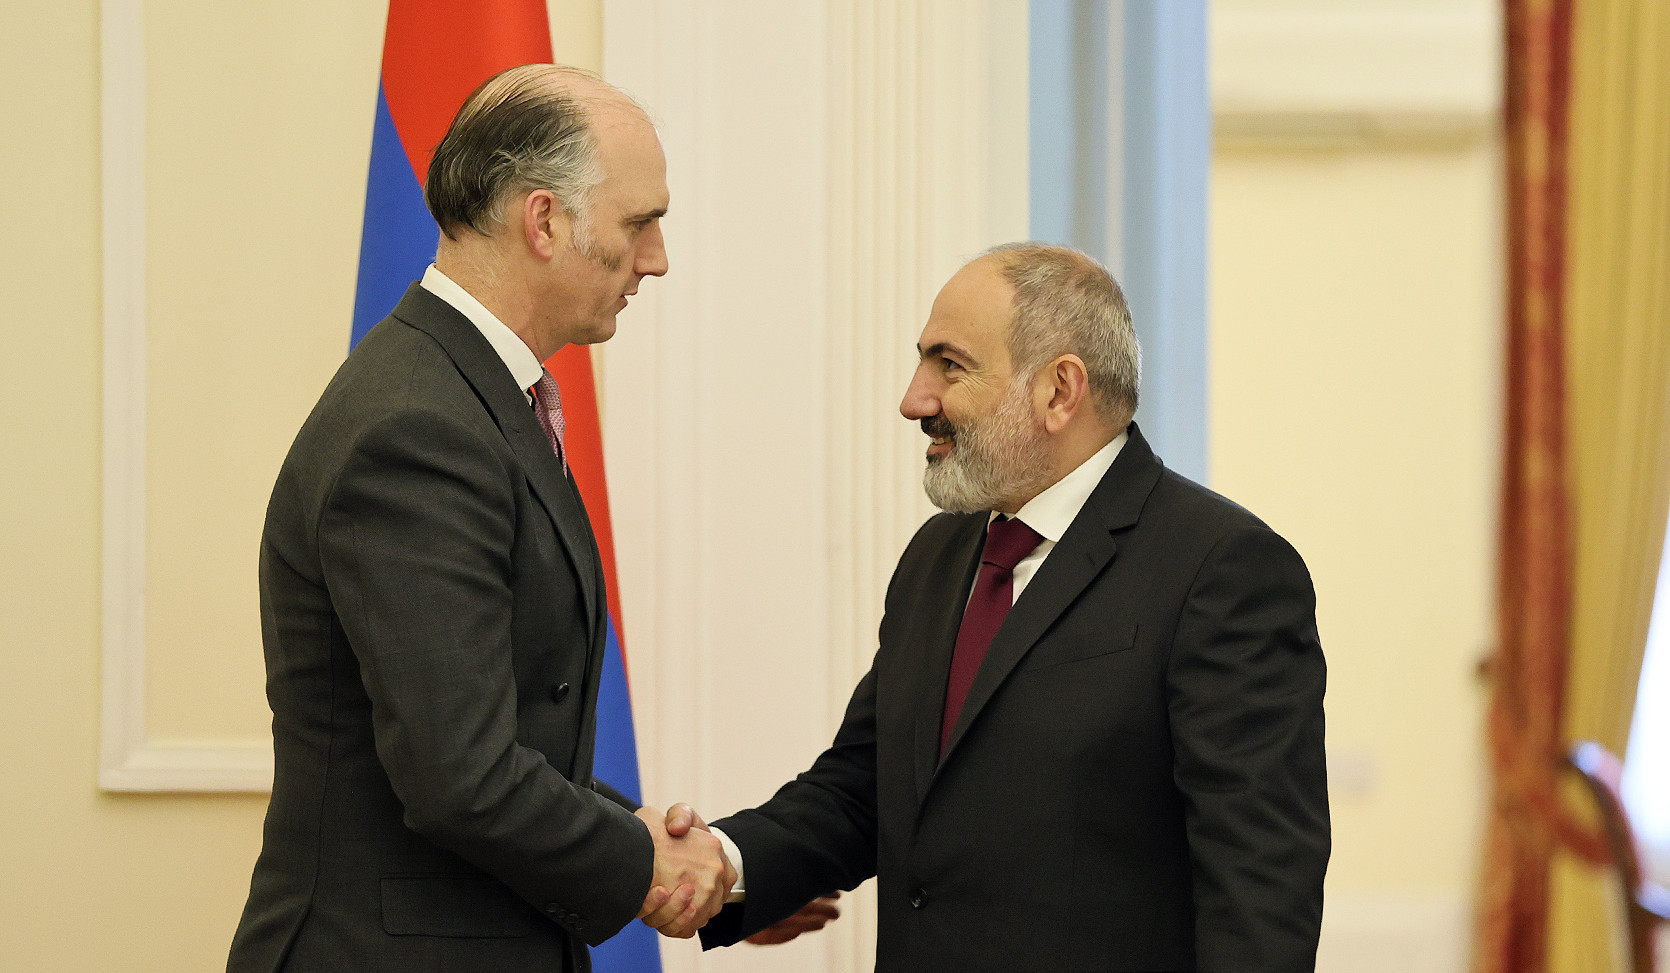 Փաշինյանն ու Լեո Դոքերթին քննարկել են Հայաստան-Ադրբեջան հարաբերությունների կարգավորման գործընթացին վերաբերող հարցեր